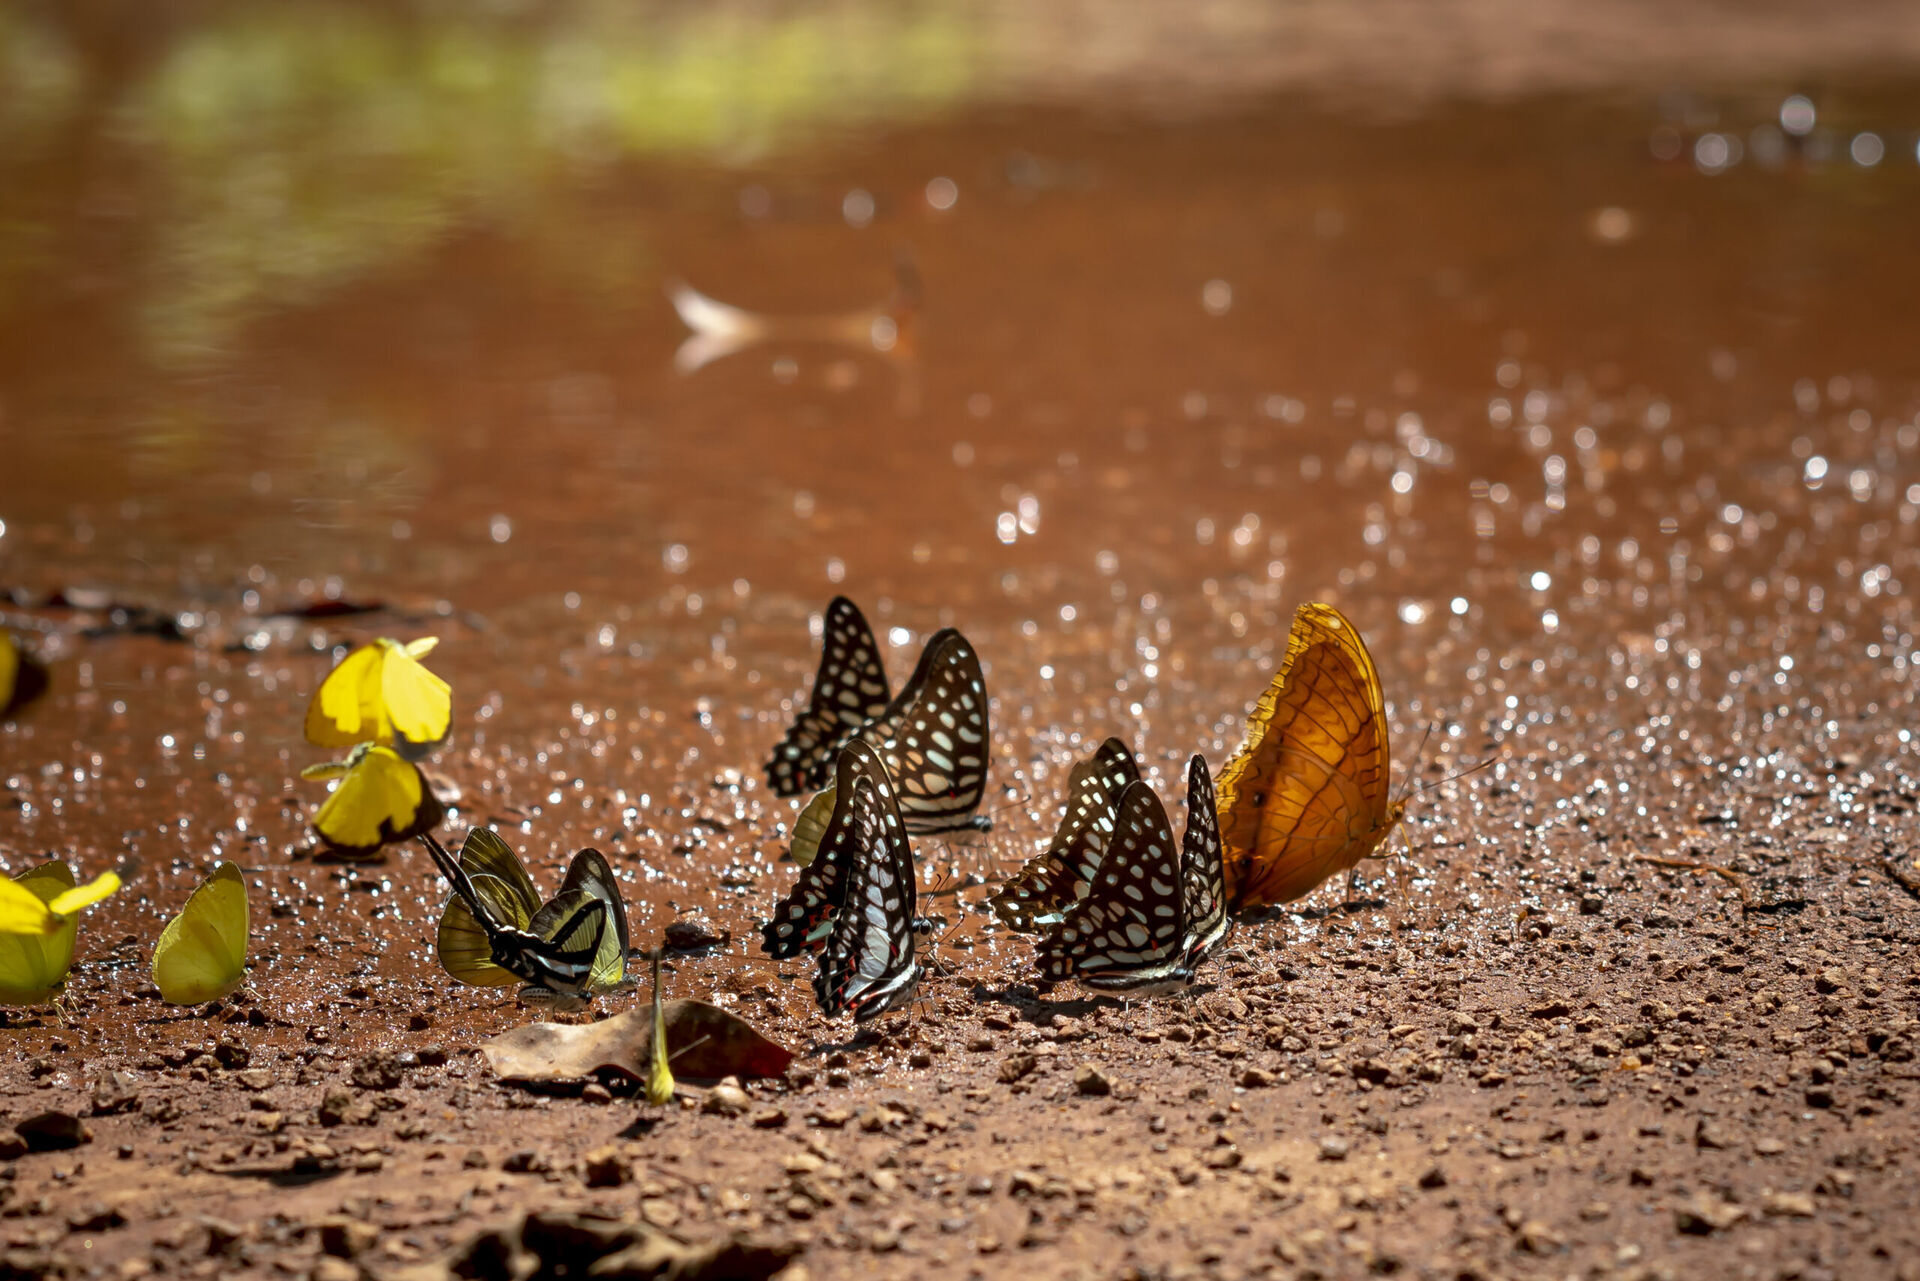 Uroda i tajemnice ogrodowych motyli - odkryj niezwykły świat kolorowych skrzydeł